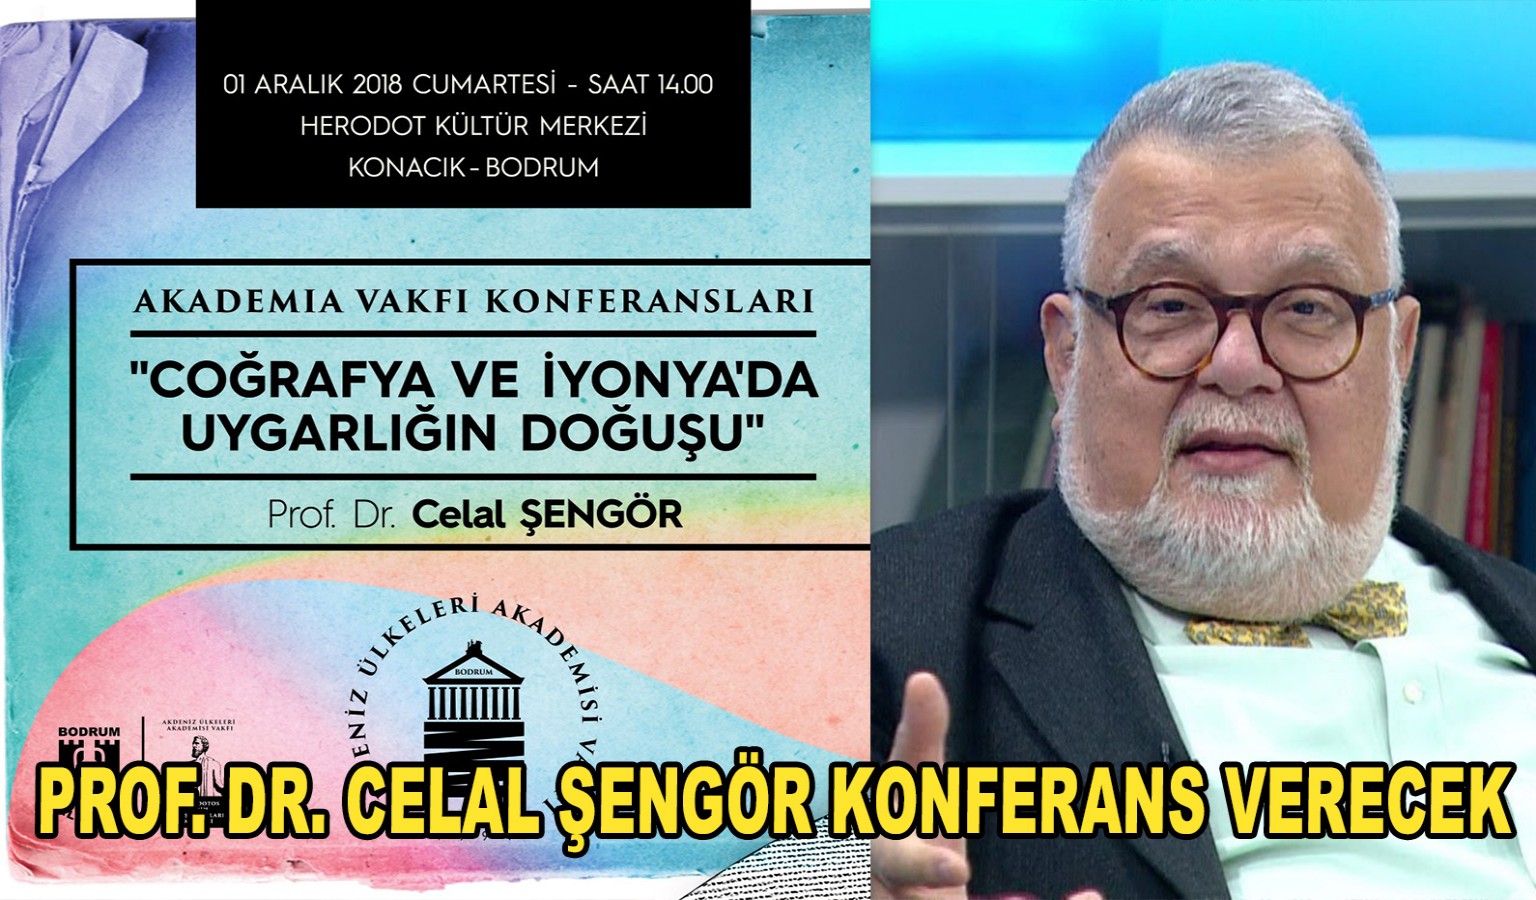 PROF. DR. CELAL ŞENGÖR KONFERANS VERECEK